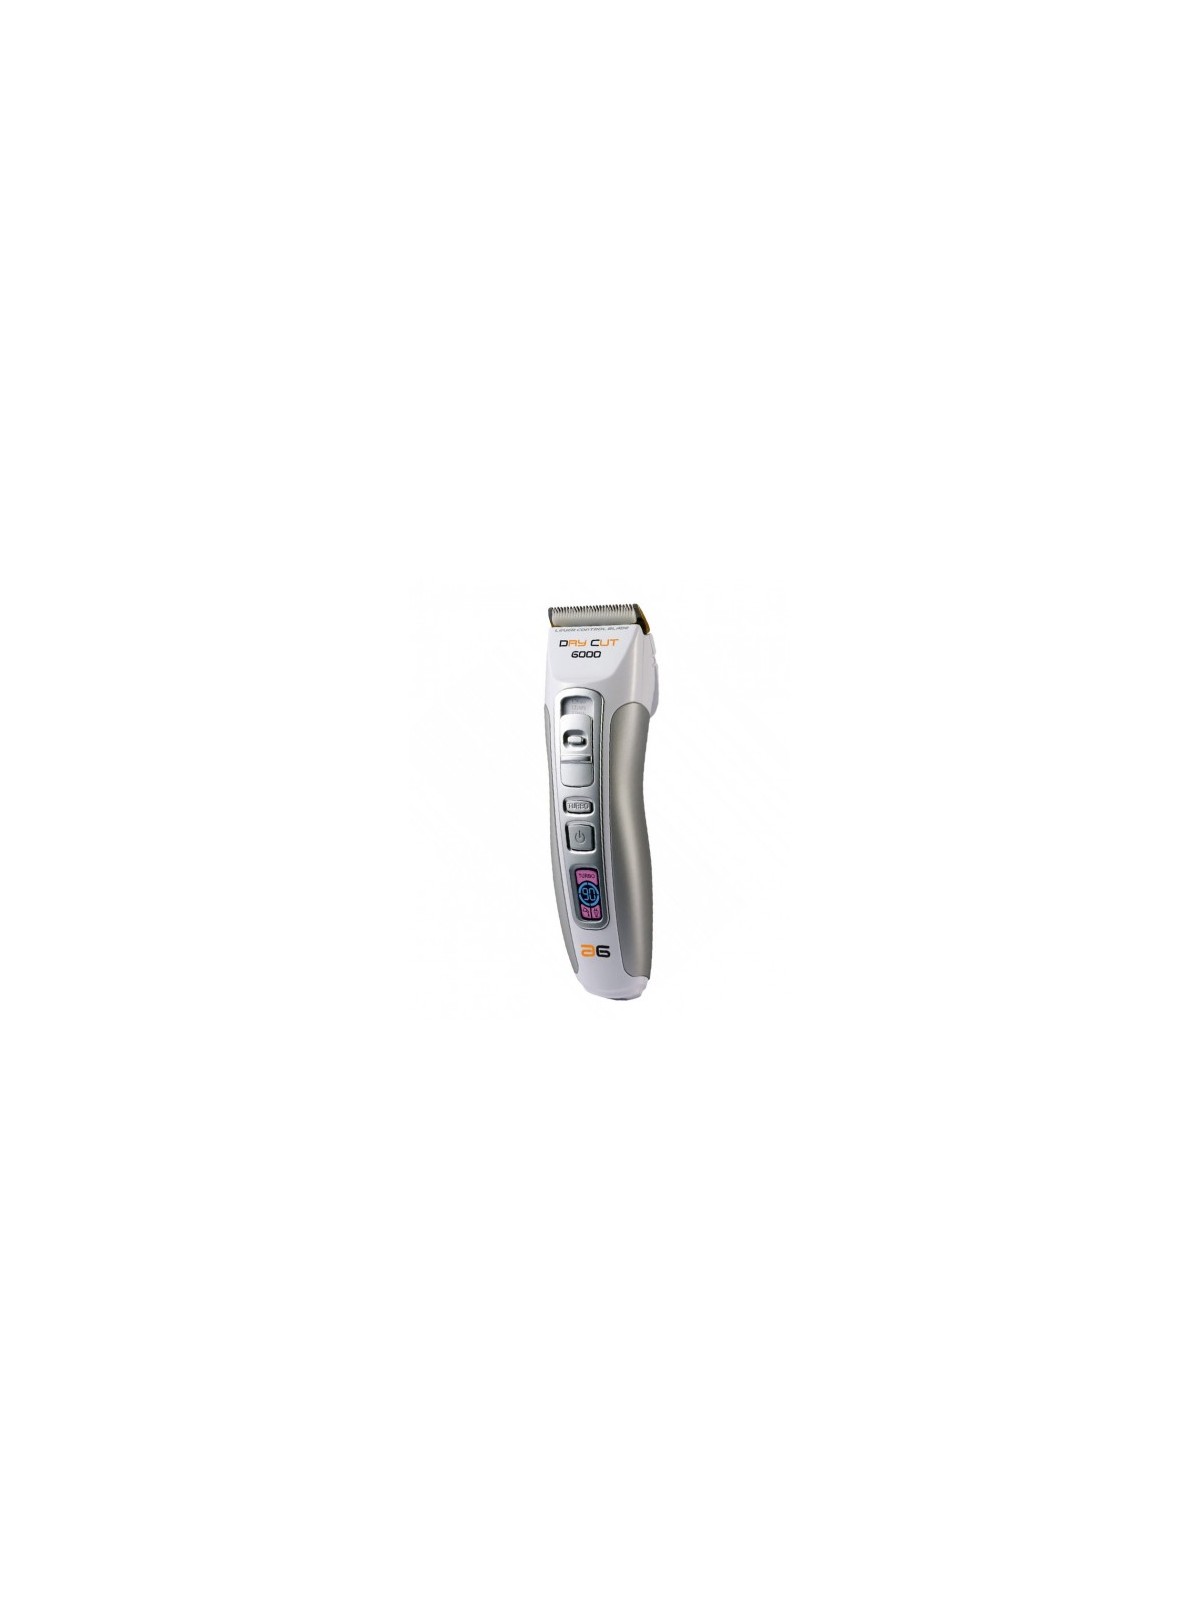 Regala Máquina de Corte Dry Cut 6000 Lcd + Turbo.- Asuer Group con nuestra selección de Máquinas de cortar por tan sólo 87,37 € o precio específico 69,90 € en Thalie Care